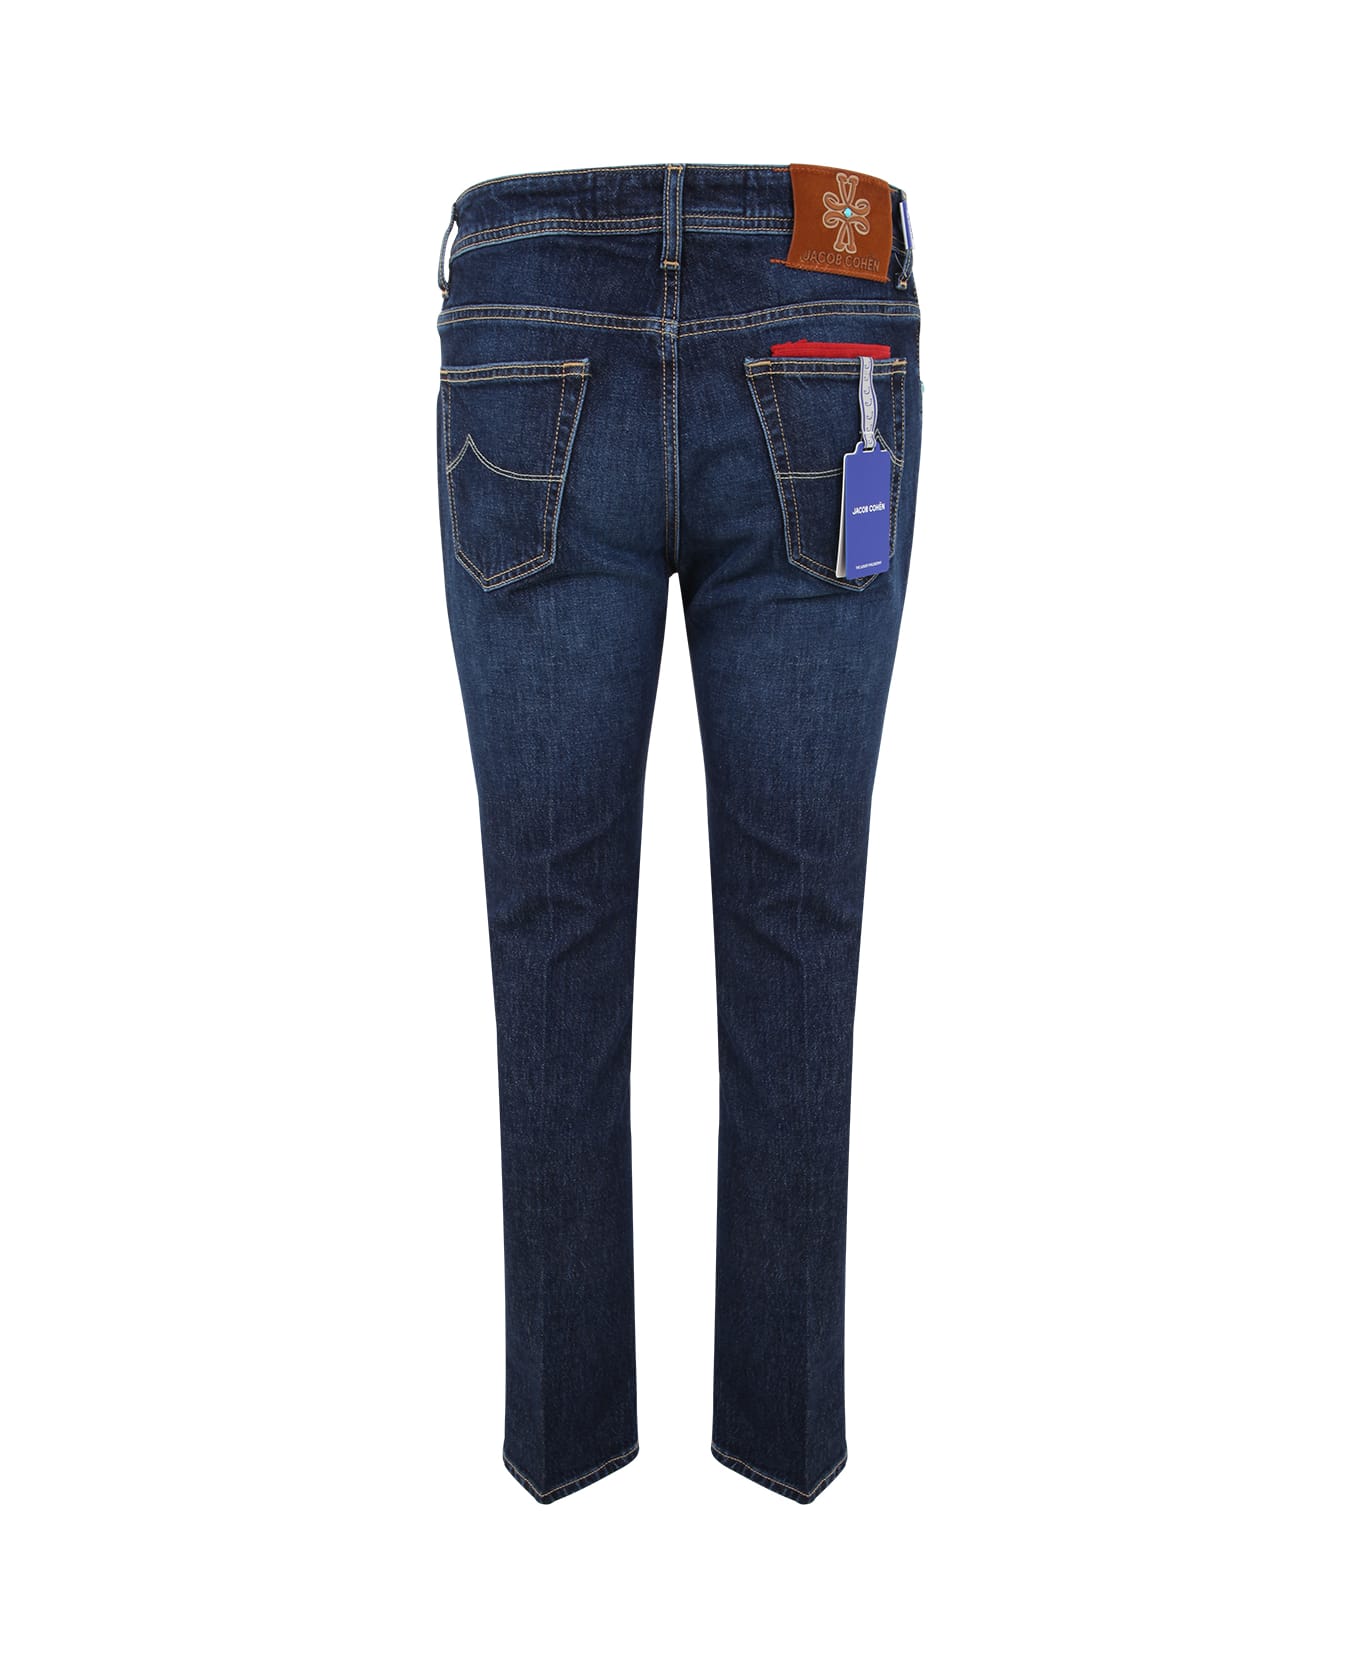 Jacob Cohen Scott Slim Crop Carrot Fit Five Pockets Jeans - Denim